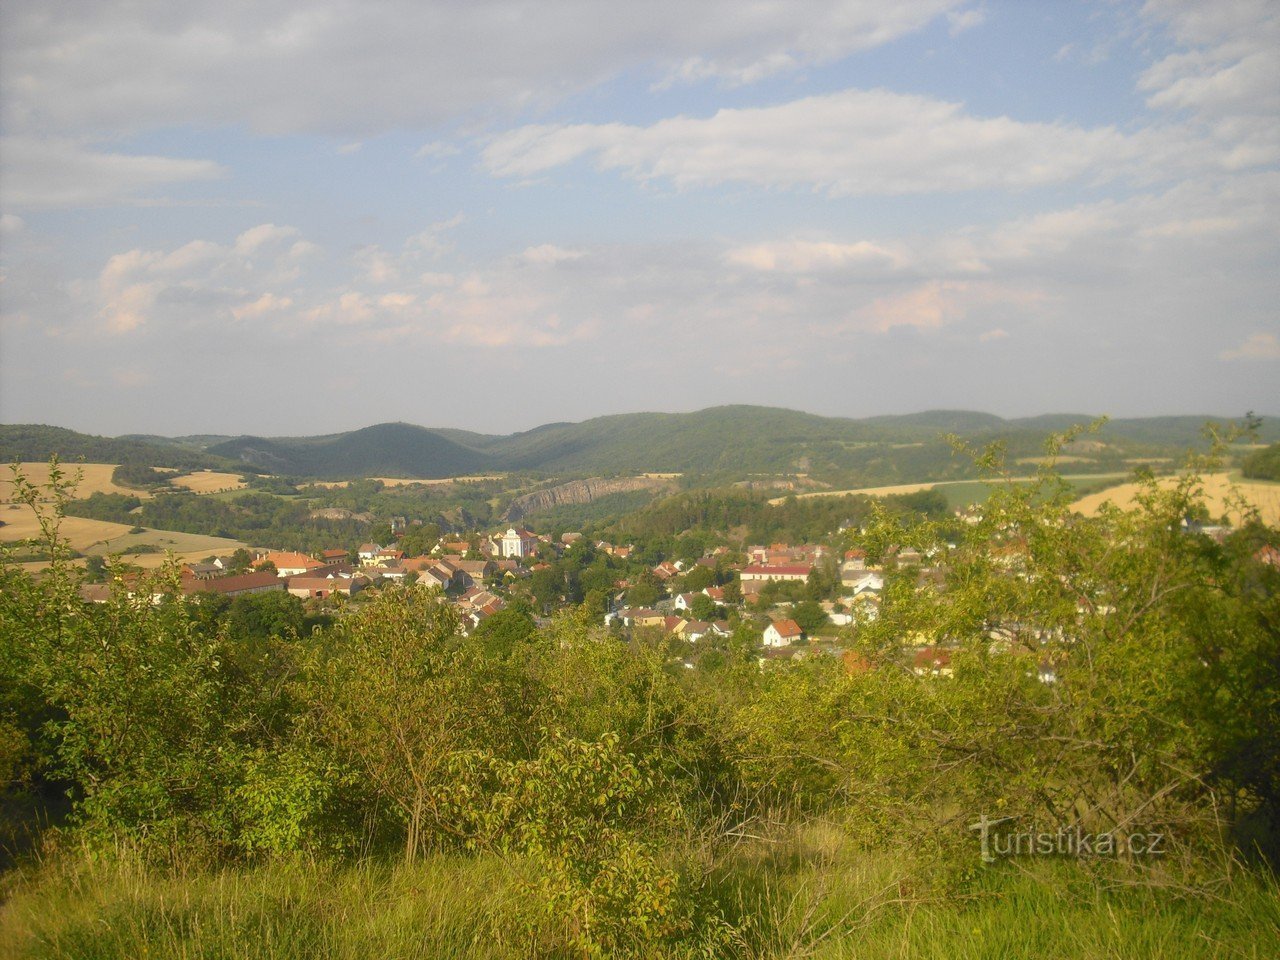 Tetín - en viktig juvel i tjeckisk historia